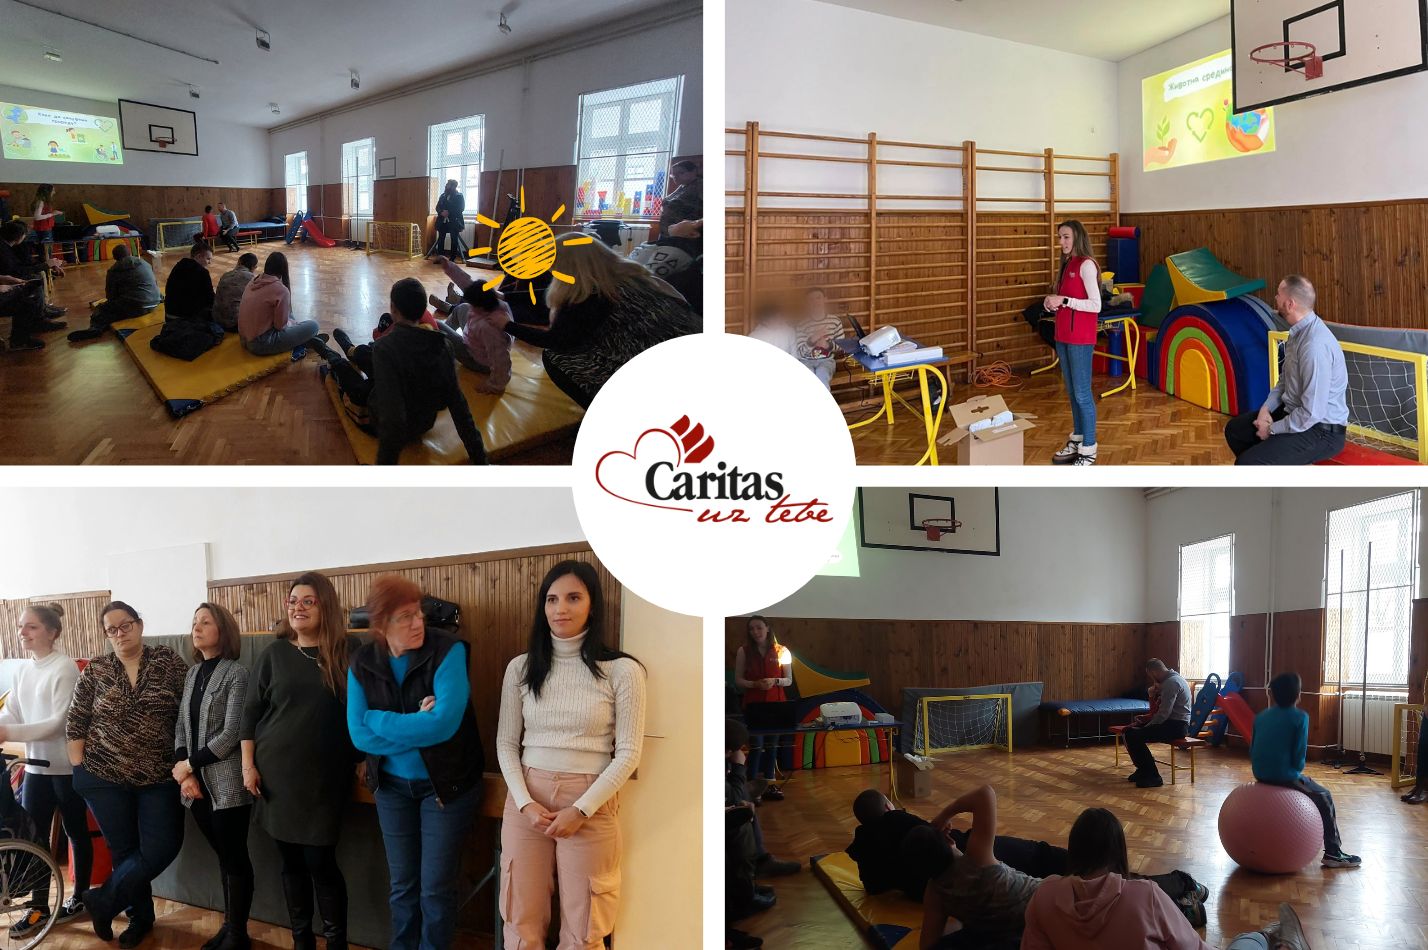 Sala za fizičko i aktivnosti koje delatnica Caritasa realizuje sa decom i školskim osobljem